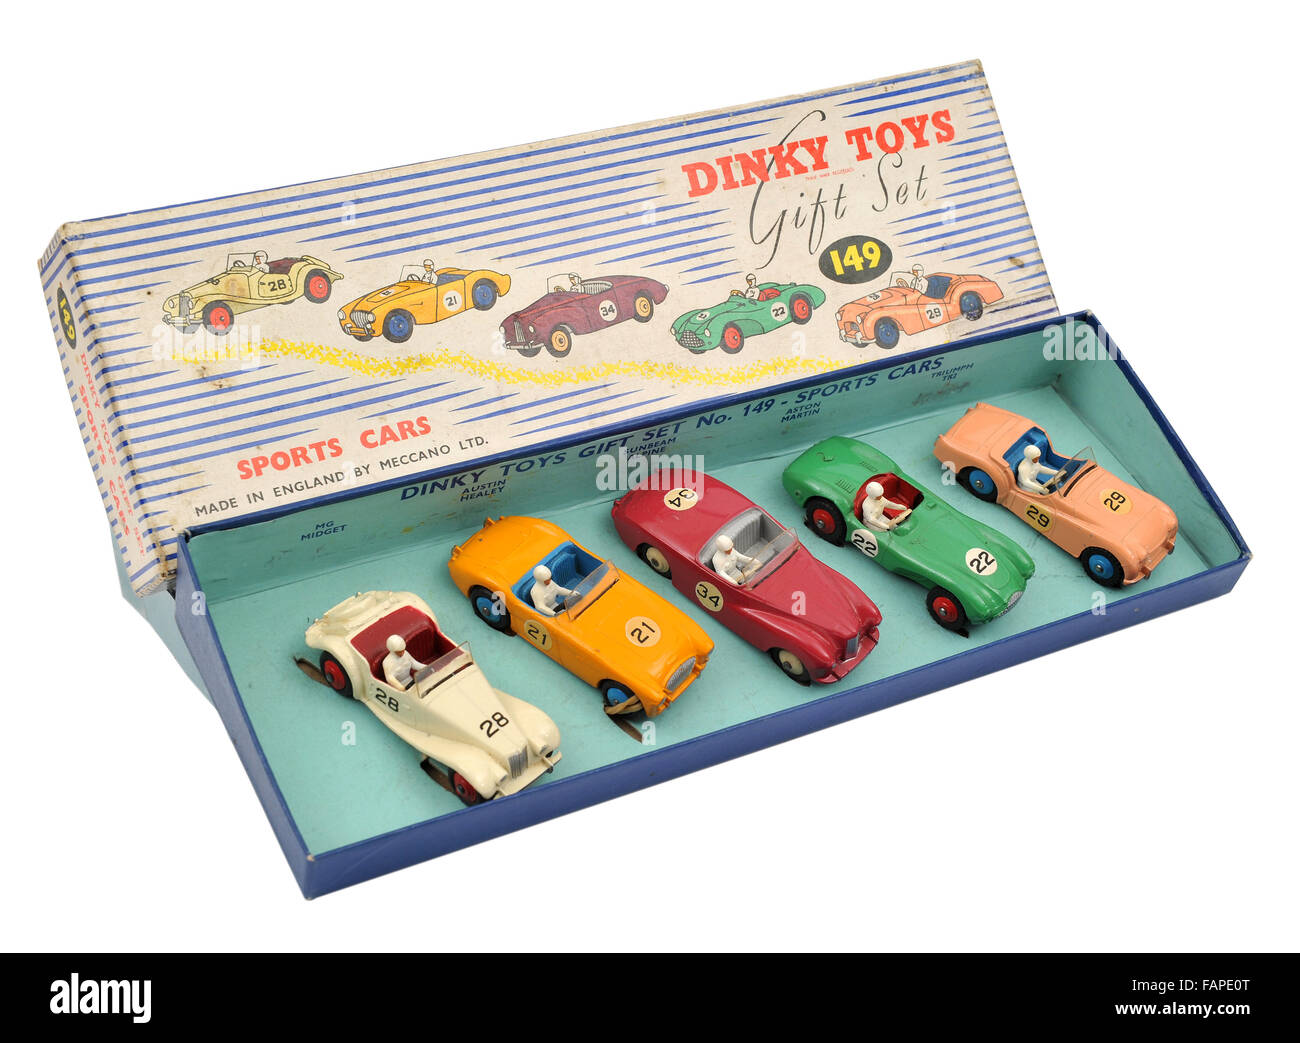 Dinky Toys 149 enfants Sports Cars Cadeau Banque D'Images